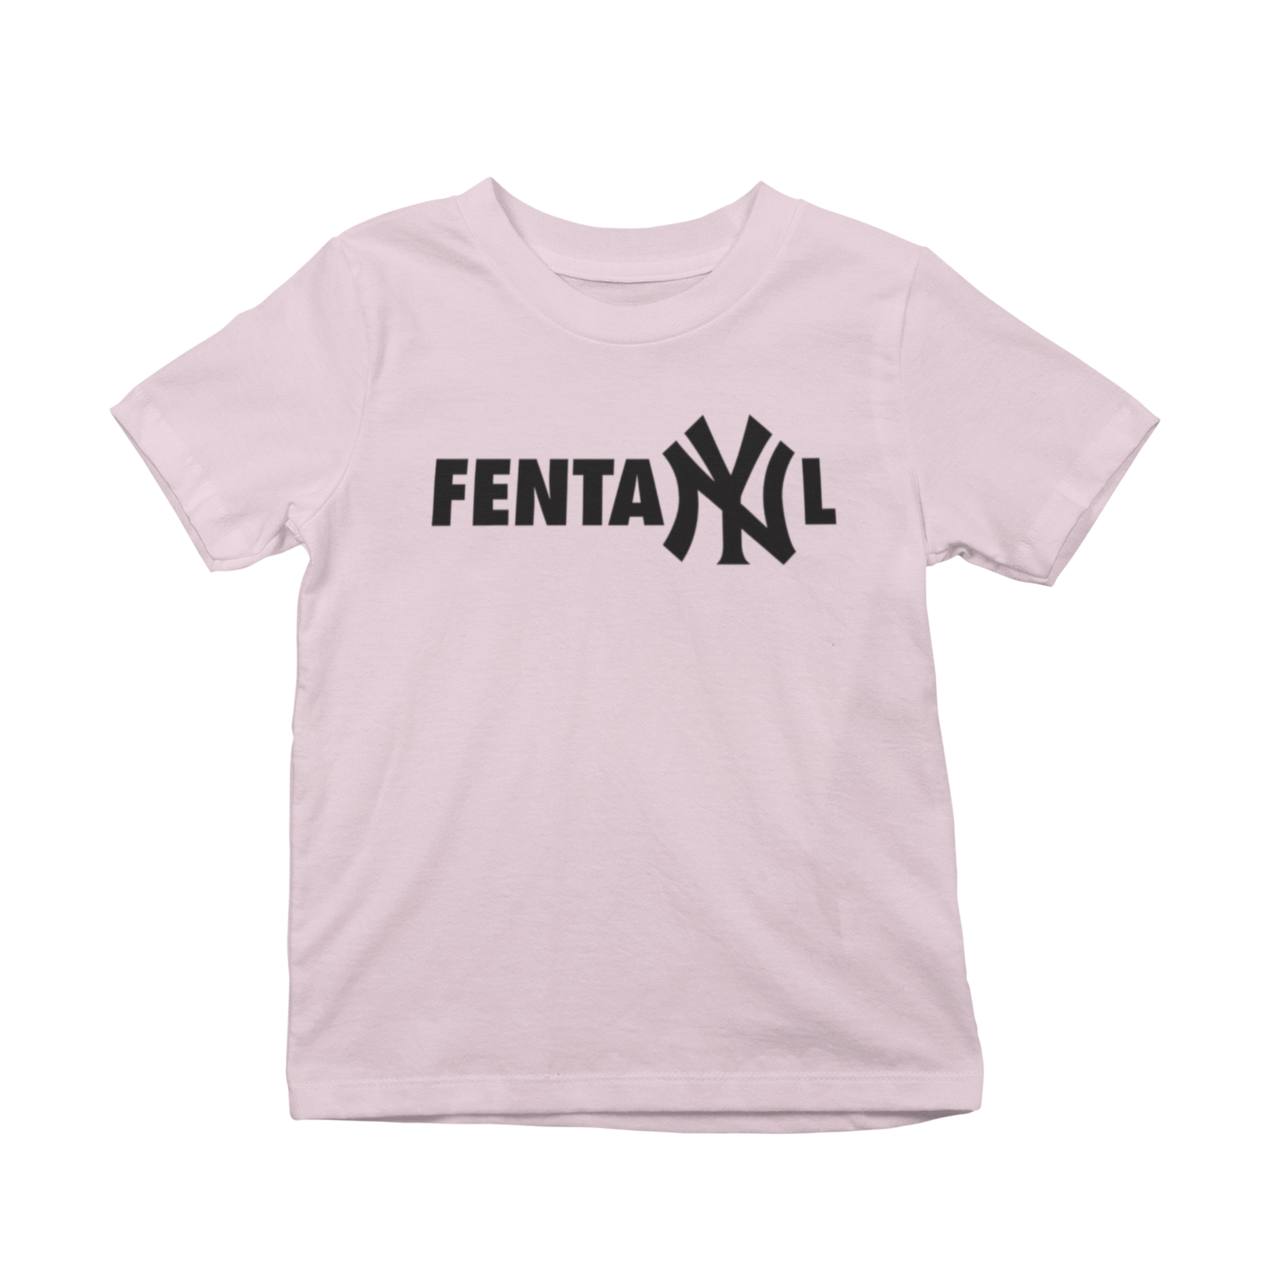 FentaNYl T-Shirt